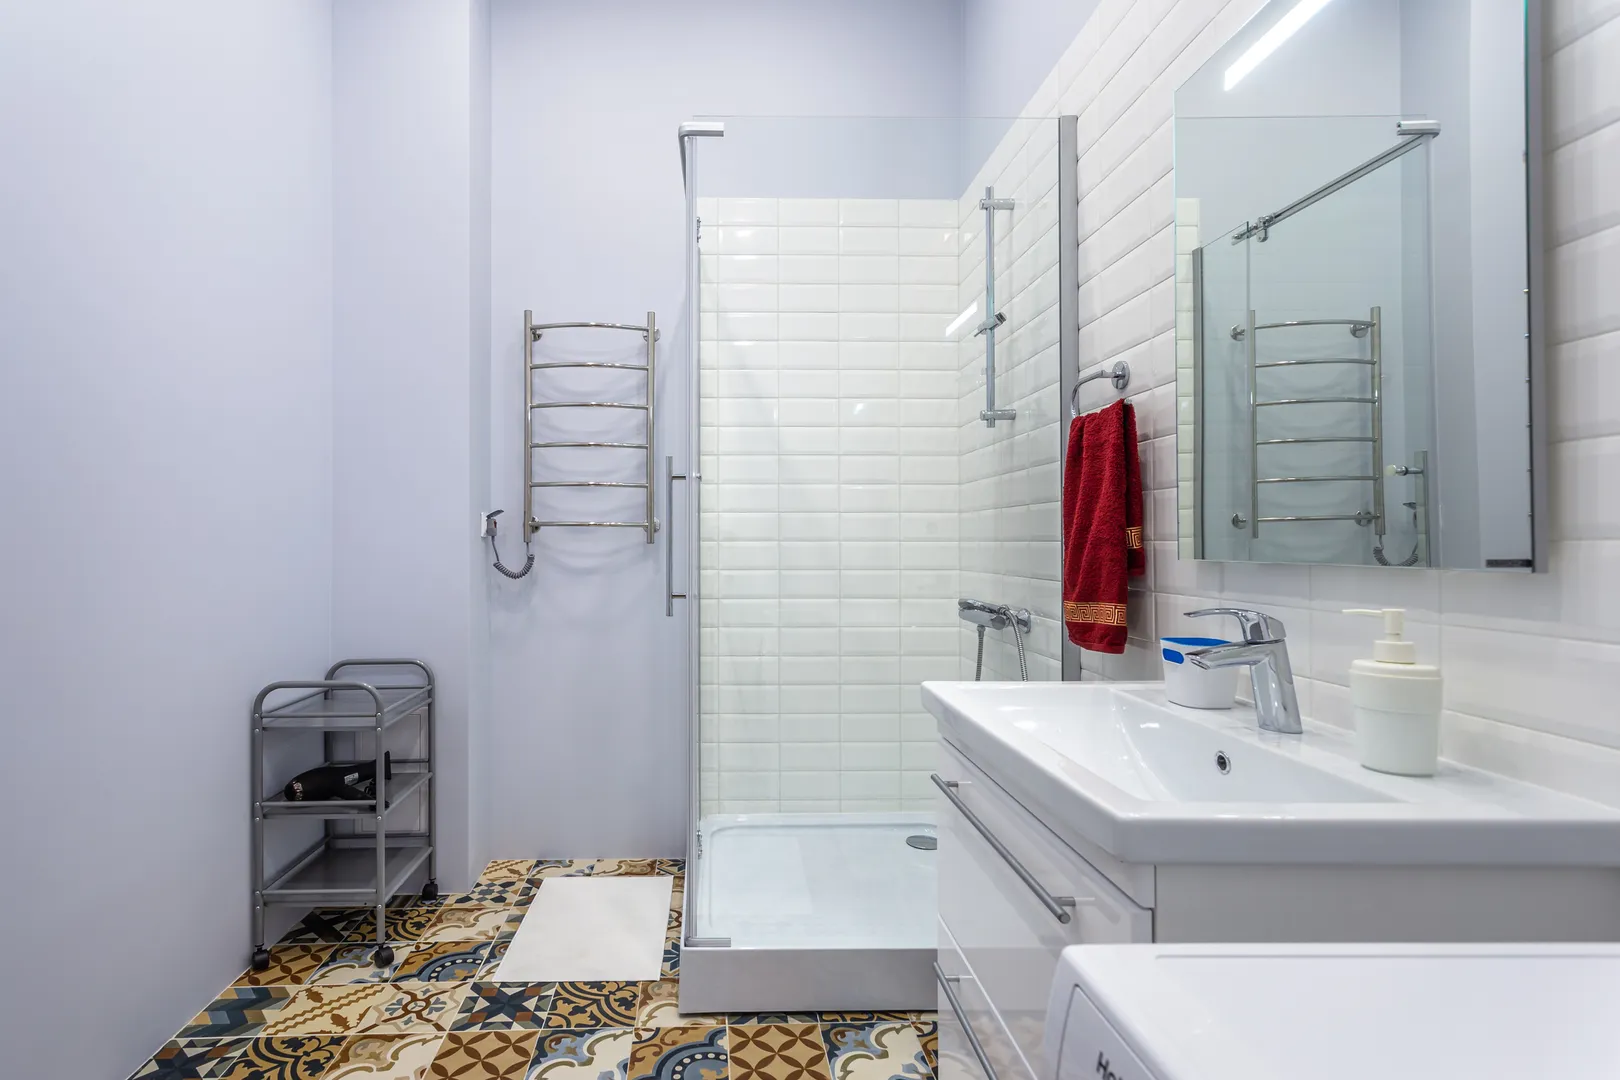 Действительно просторная ванная комната с душевой кабиной. Фен обязателен в каждой нашей квартире. А электрический полотенцесушитель работает в любое время года.